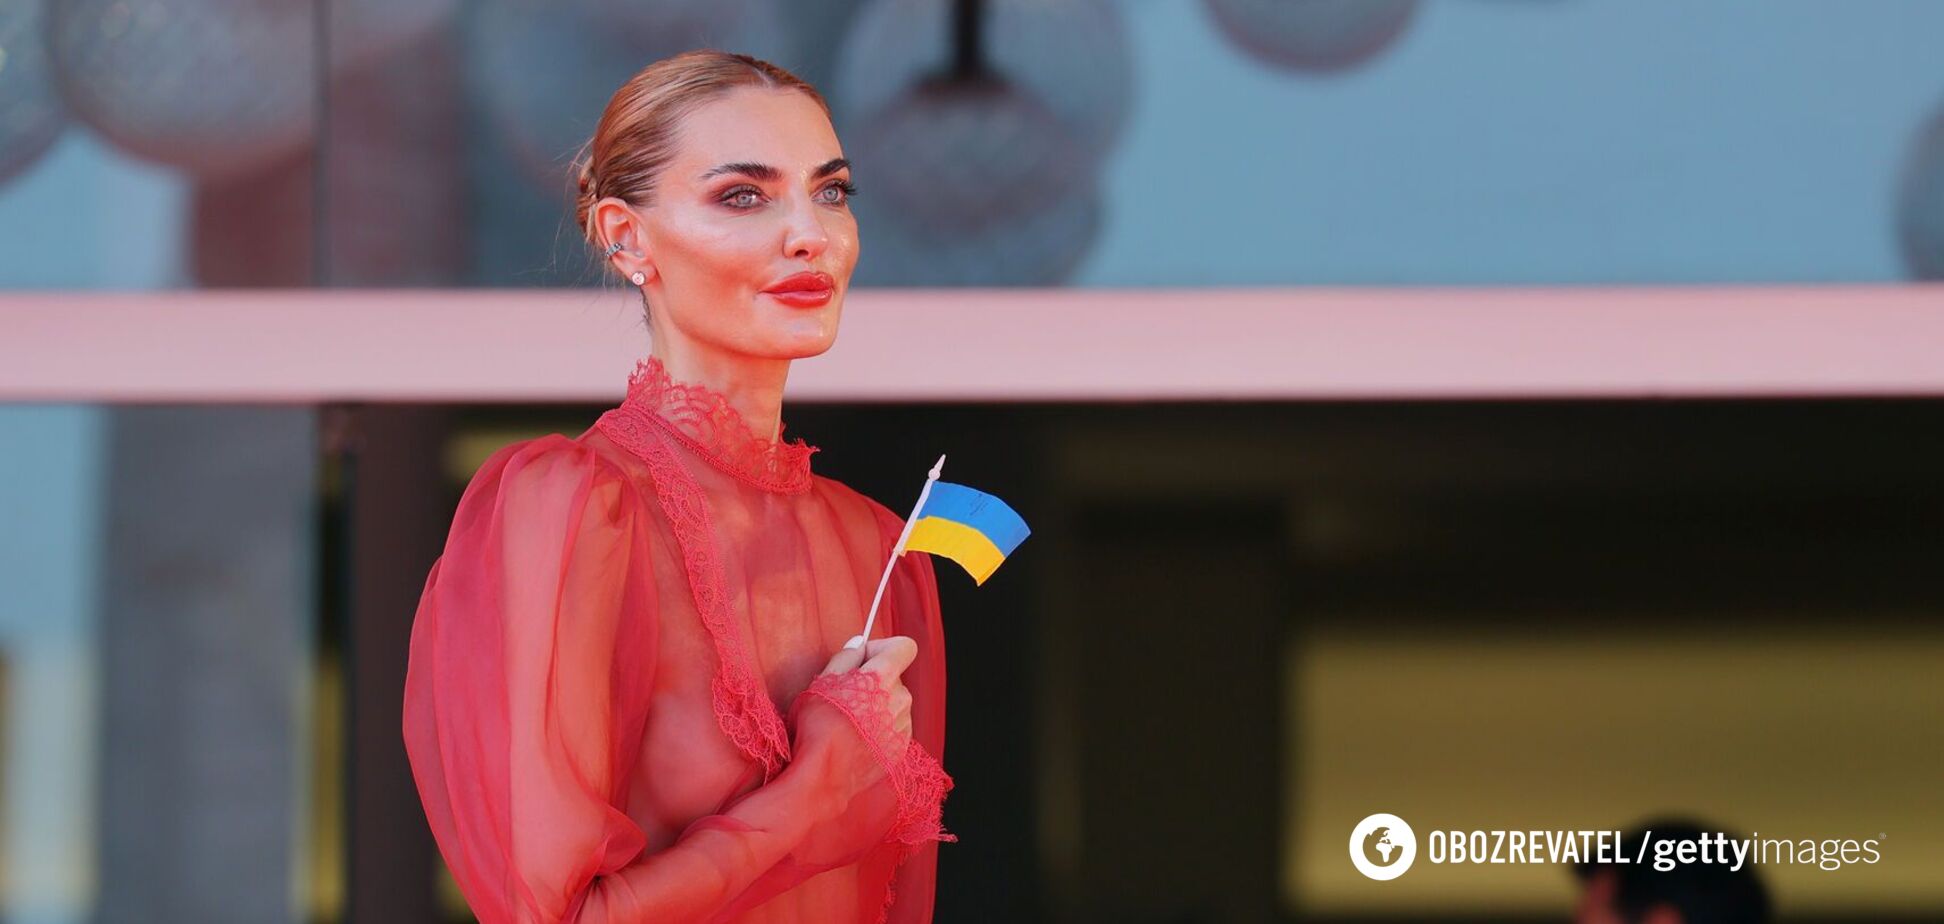 Известная модель Алина Байкова вышла на красную дорожку с флагом Украины и в 'окровавленном' прозрачном платье